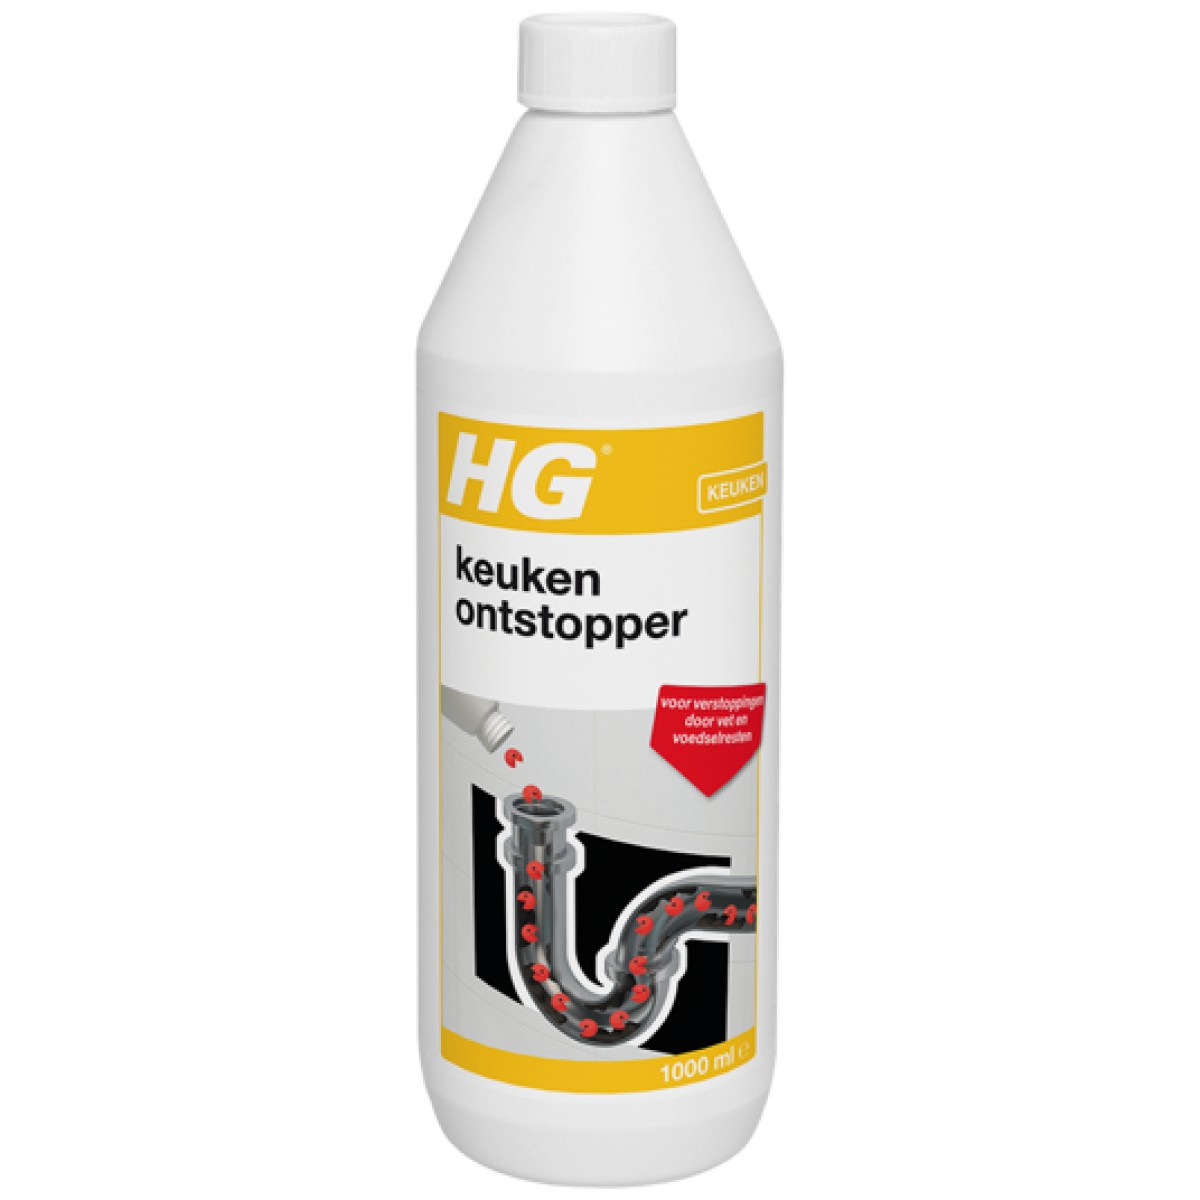 HG Keukenontstopper, 1 liter